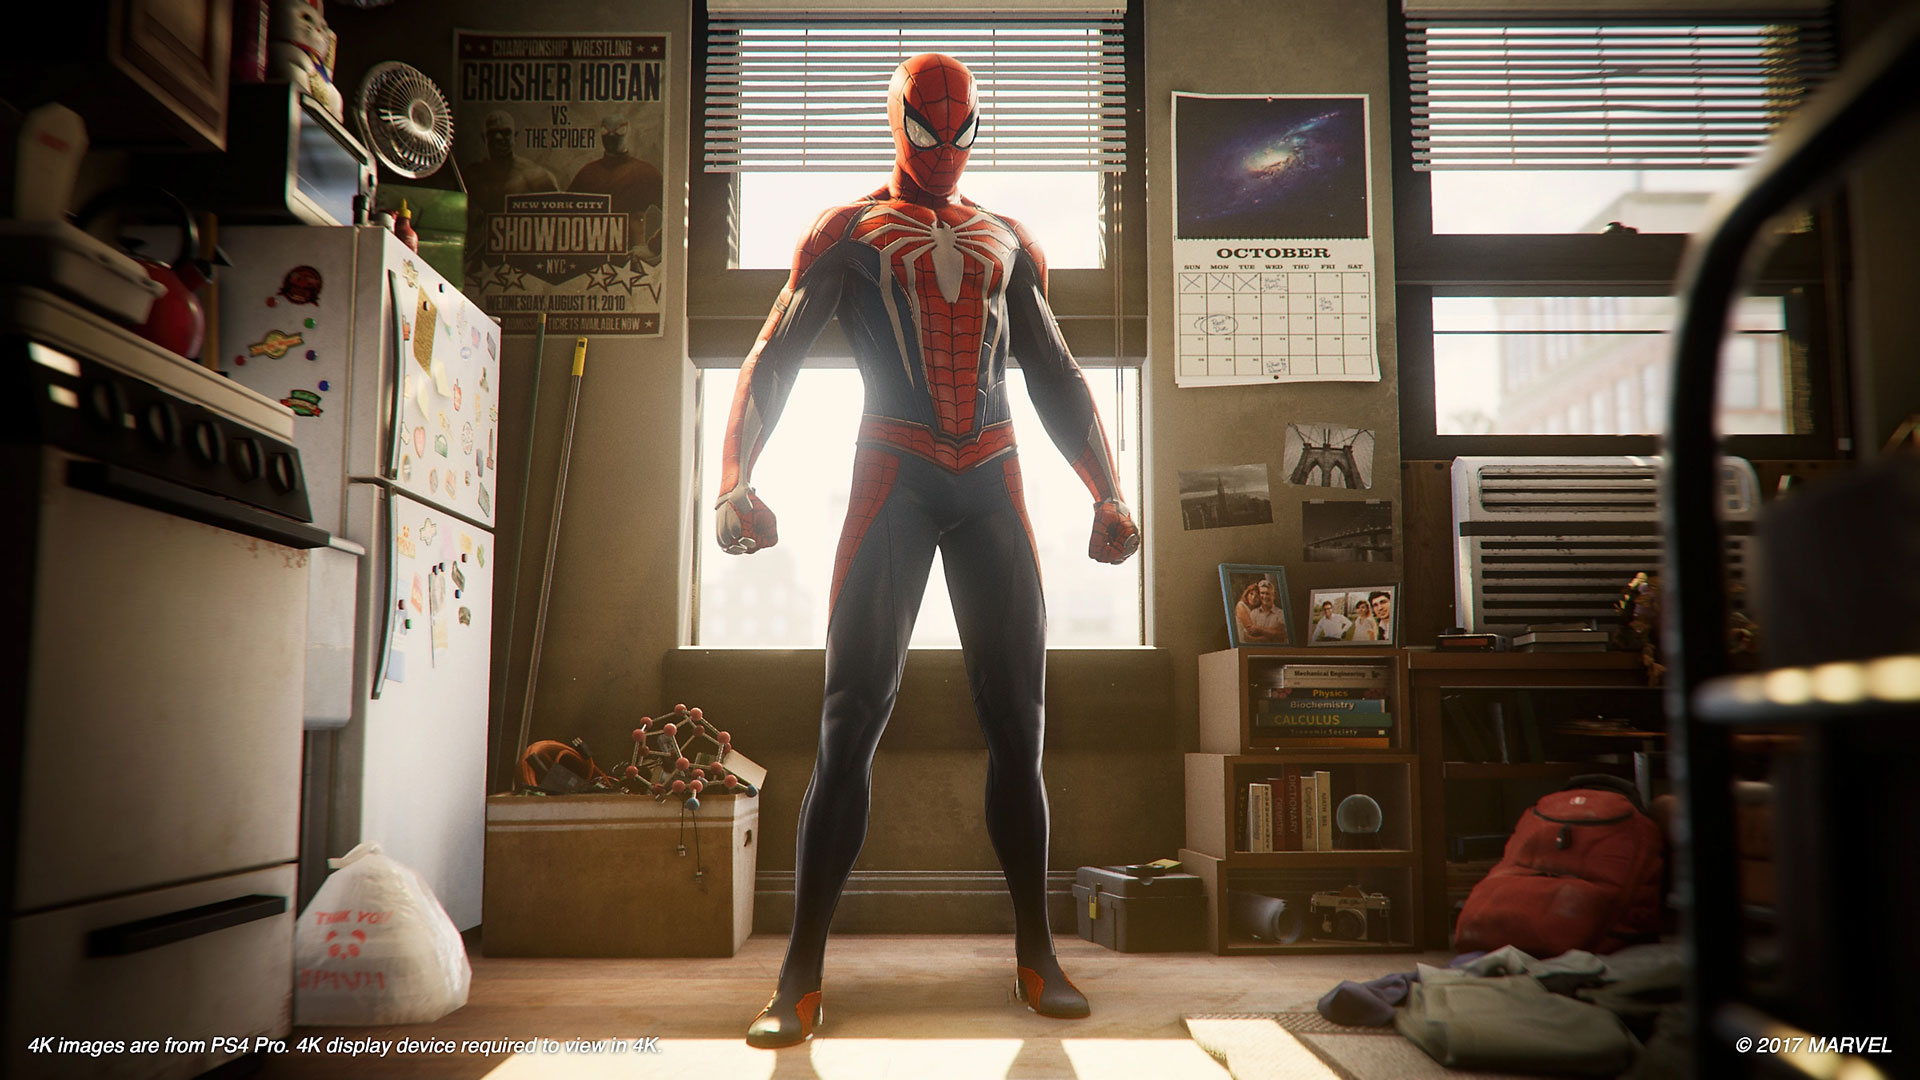 Spider Man Homem Aranha (Edição Jogo do Ano) - Ps4 - ZEUS GAMES